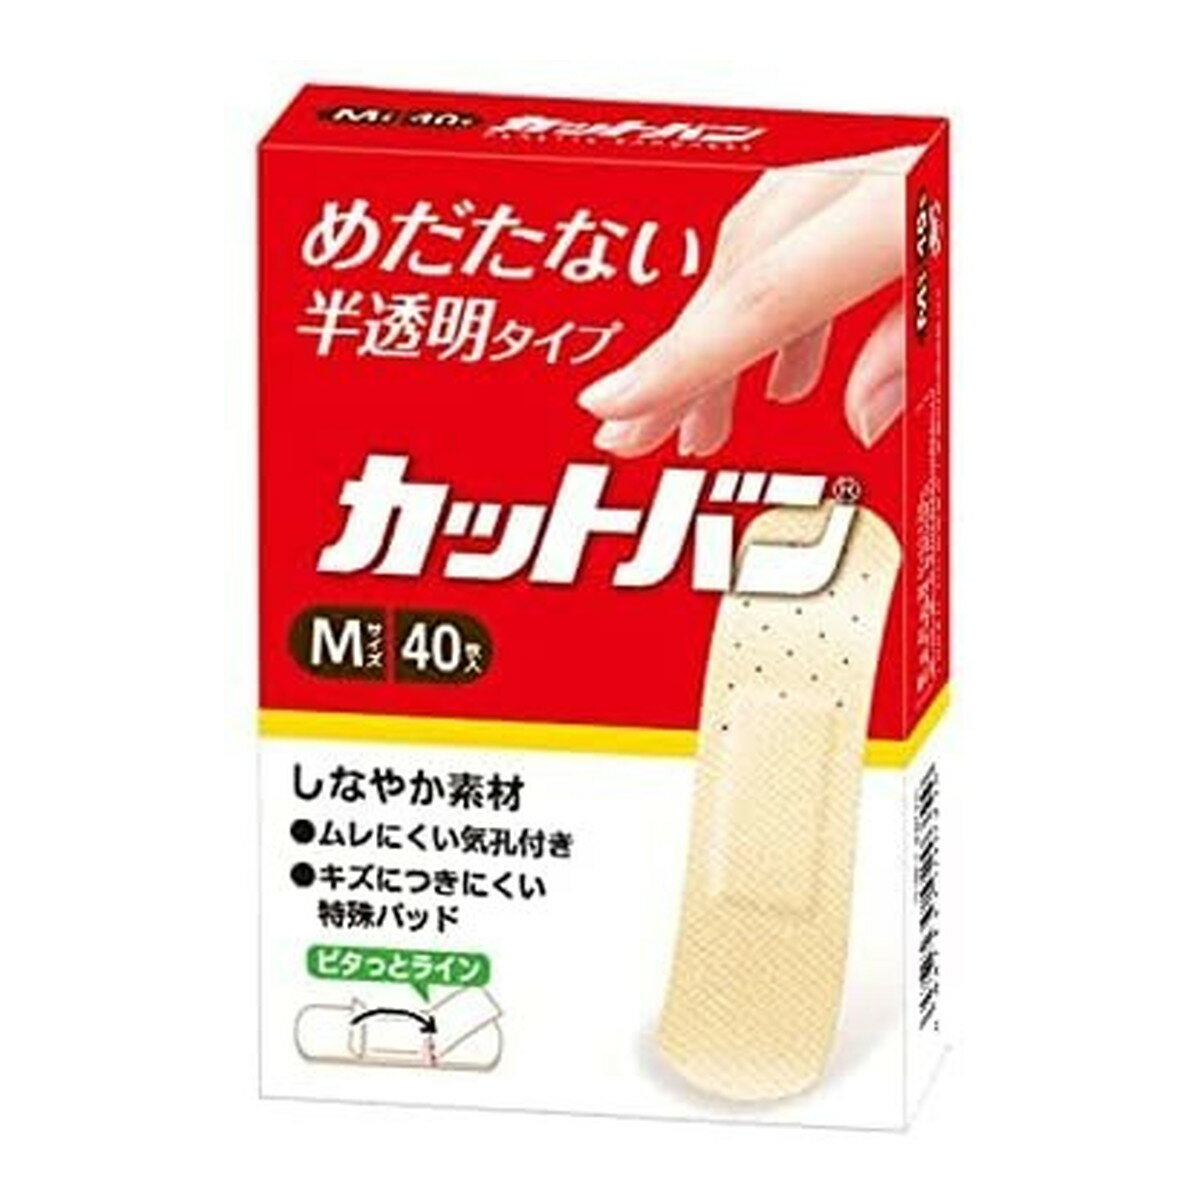 【新春セール】祐徳薬品工業 カットバン M 40枚入